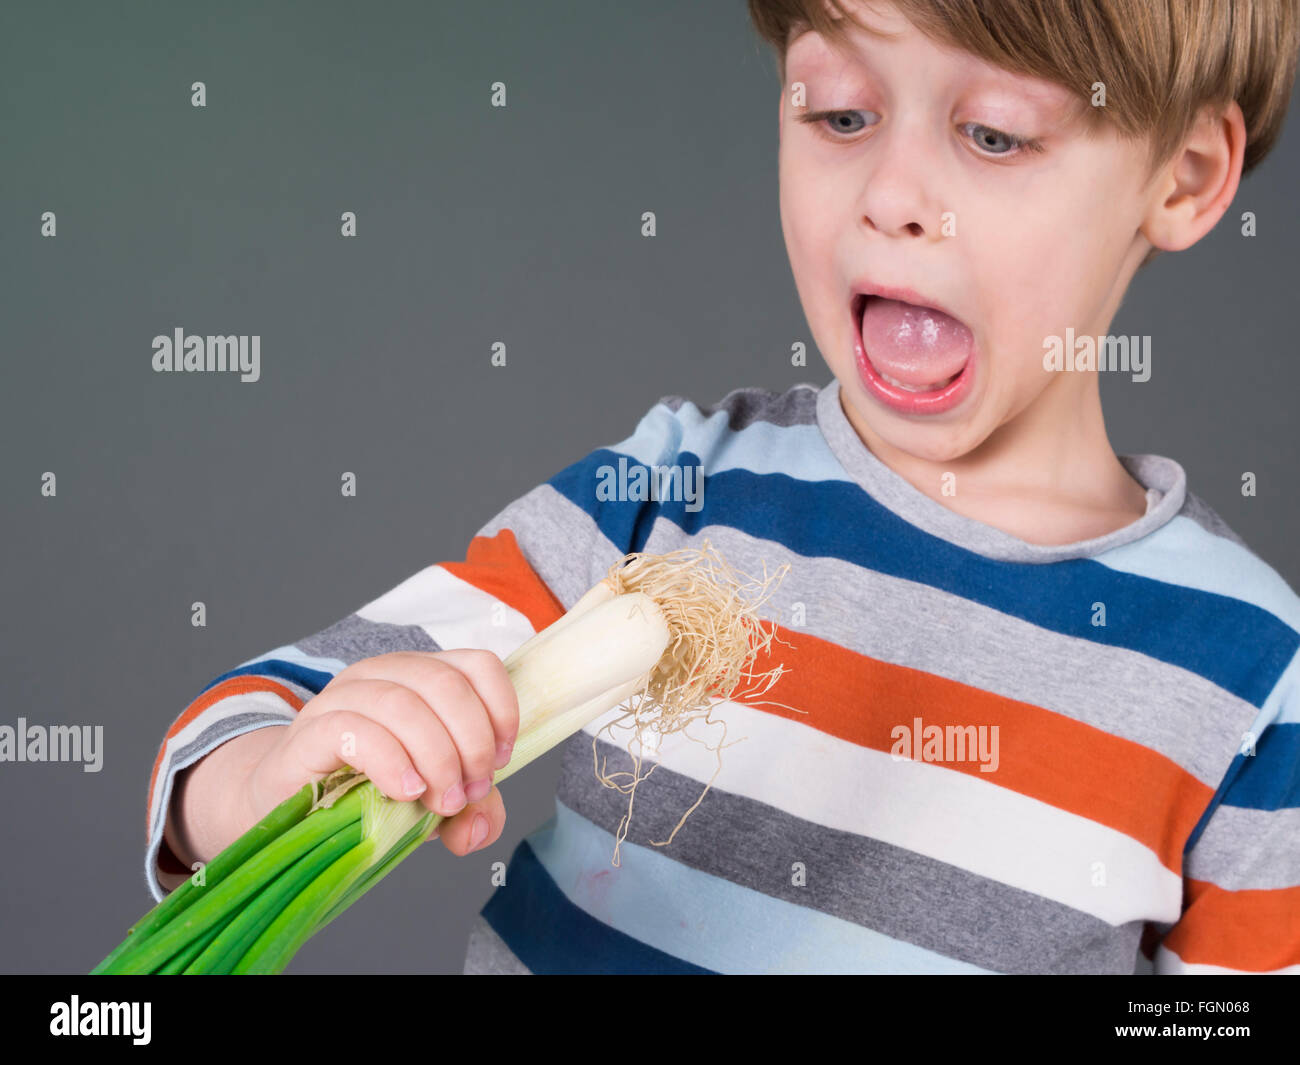 Lustige Kinder halten Lauch Gemüse, Weigerung zu essen Stockfoto